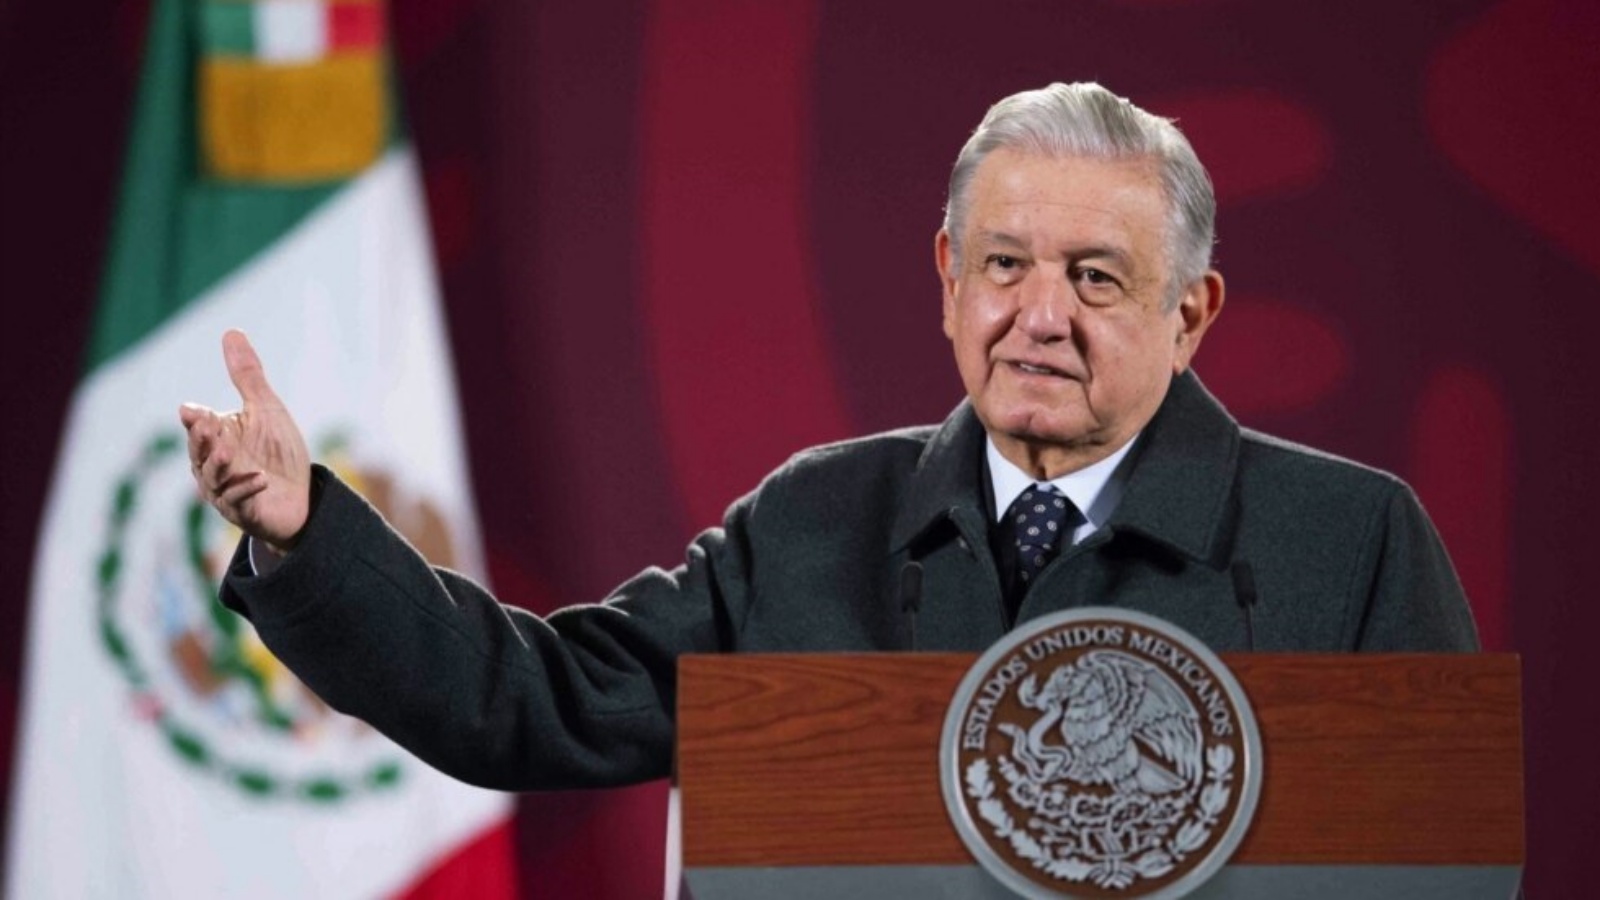 الرئيس المكسيكي أندريس مانويل لوبيز أوبرادور في مؤتمر صحفي في بالاسيو ناسيونال، في مكسيكو سيتي، 17 يناير 2022